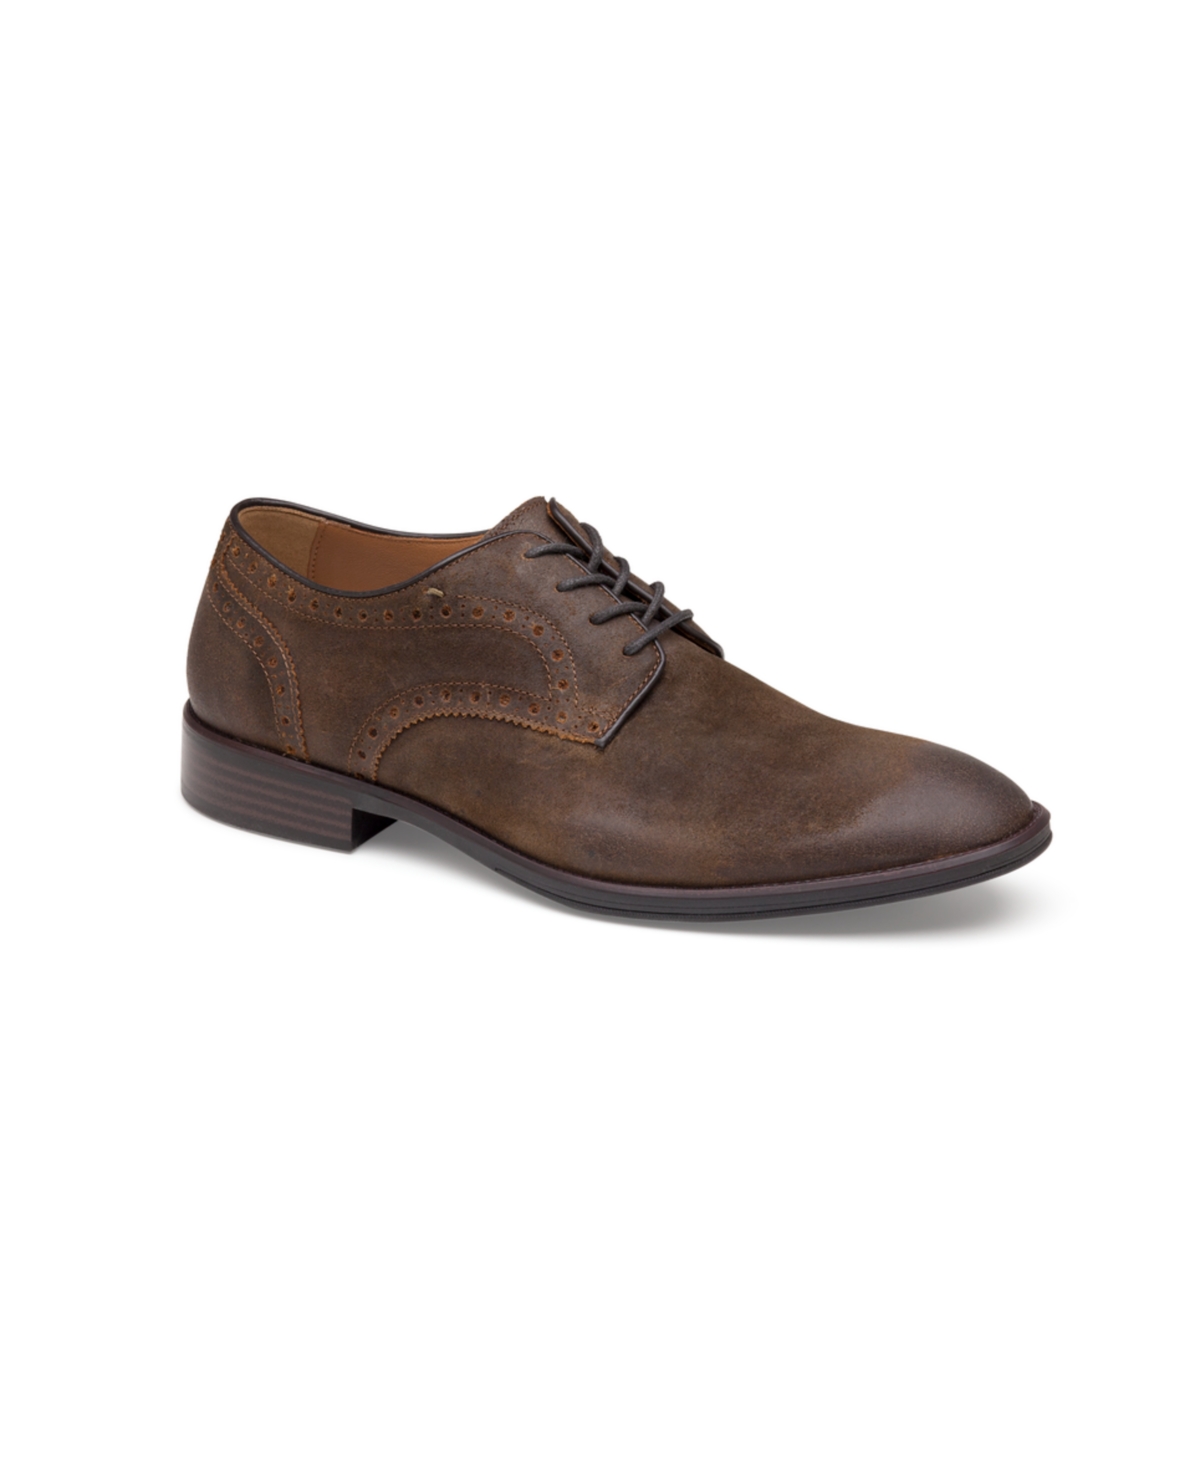 Johnston & Murphy Men's Henrick Plain Toe Oxford Shoes Men's Shoes